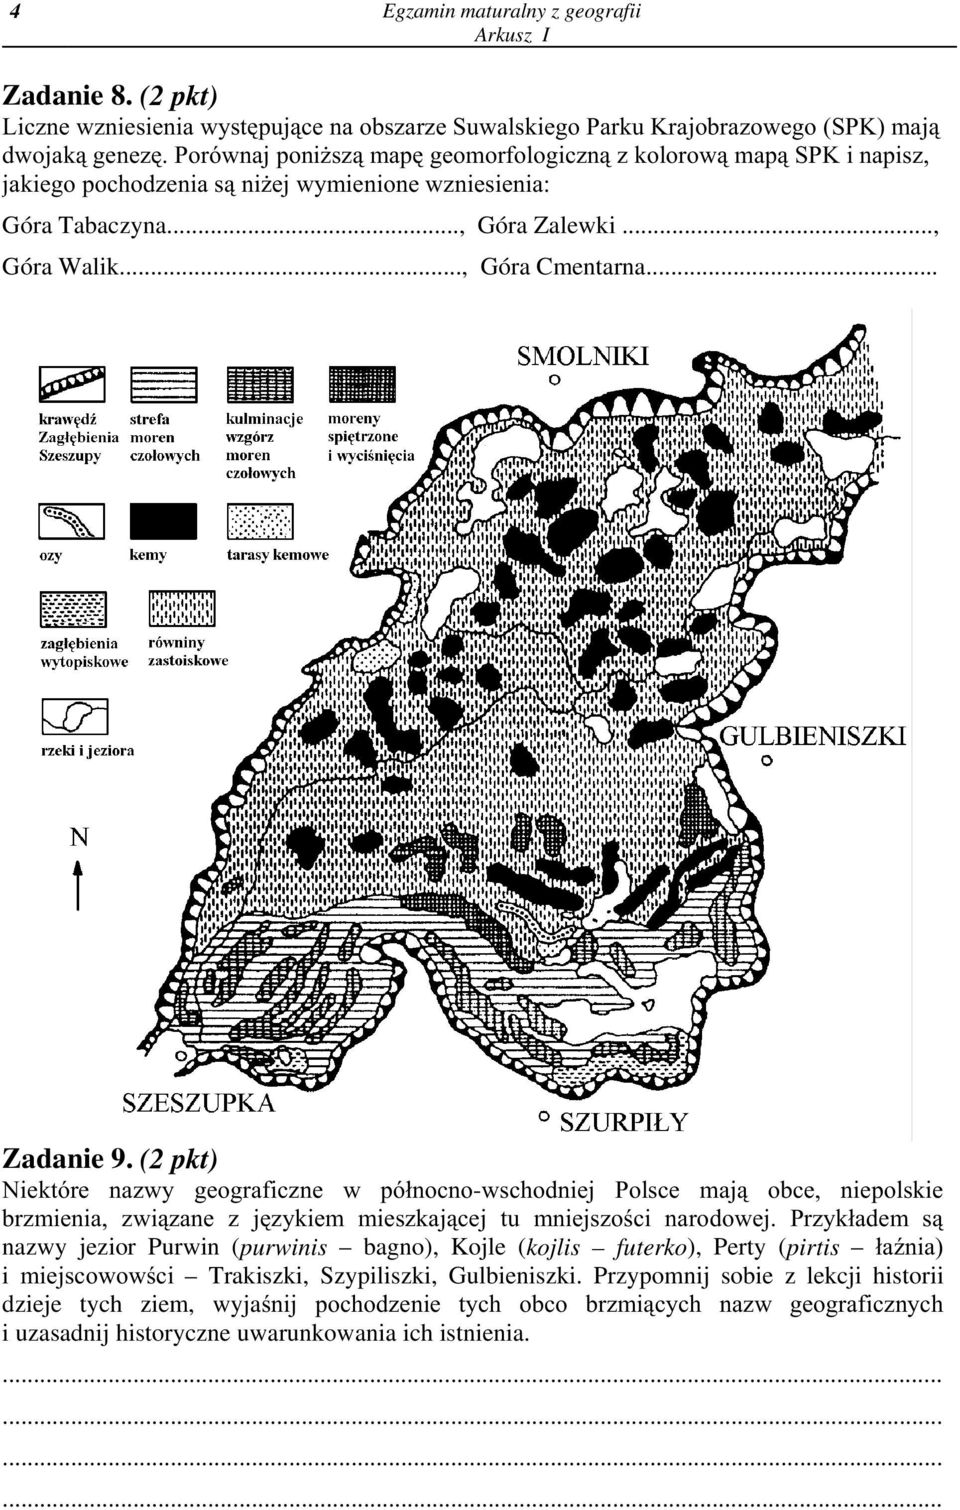 (2 pkt) Niektóre nazwy geograficzne w pó³nocno-wschodniej Polsce maj¹ obce, niepolskie brzmienia, zwi¹zane z jêzykiem mieszkaj¹cej tu mniejszoœci narodowej.